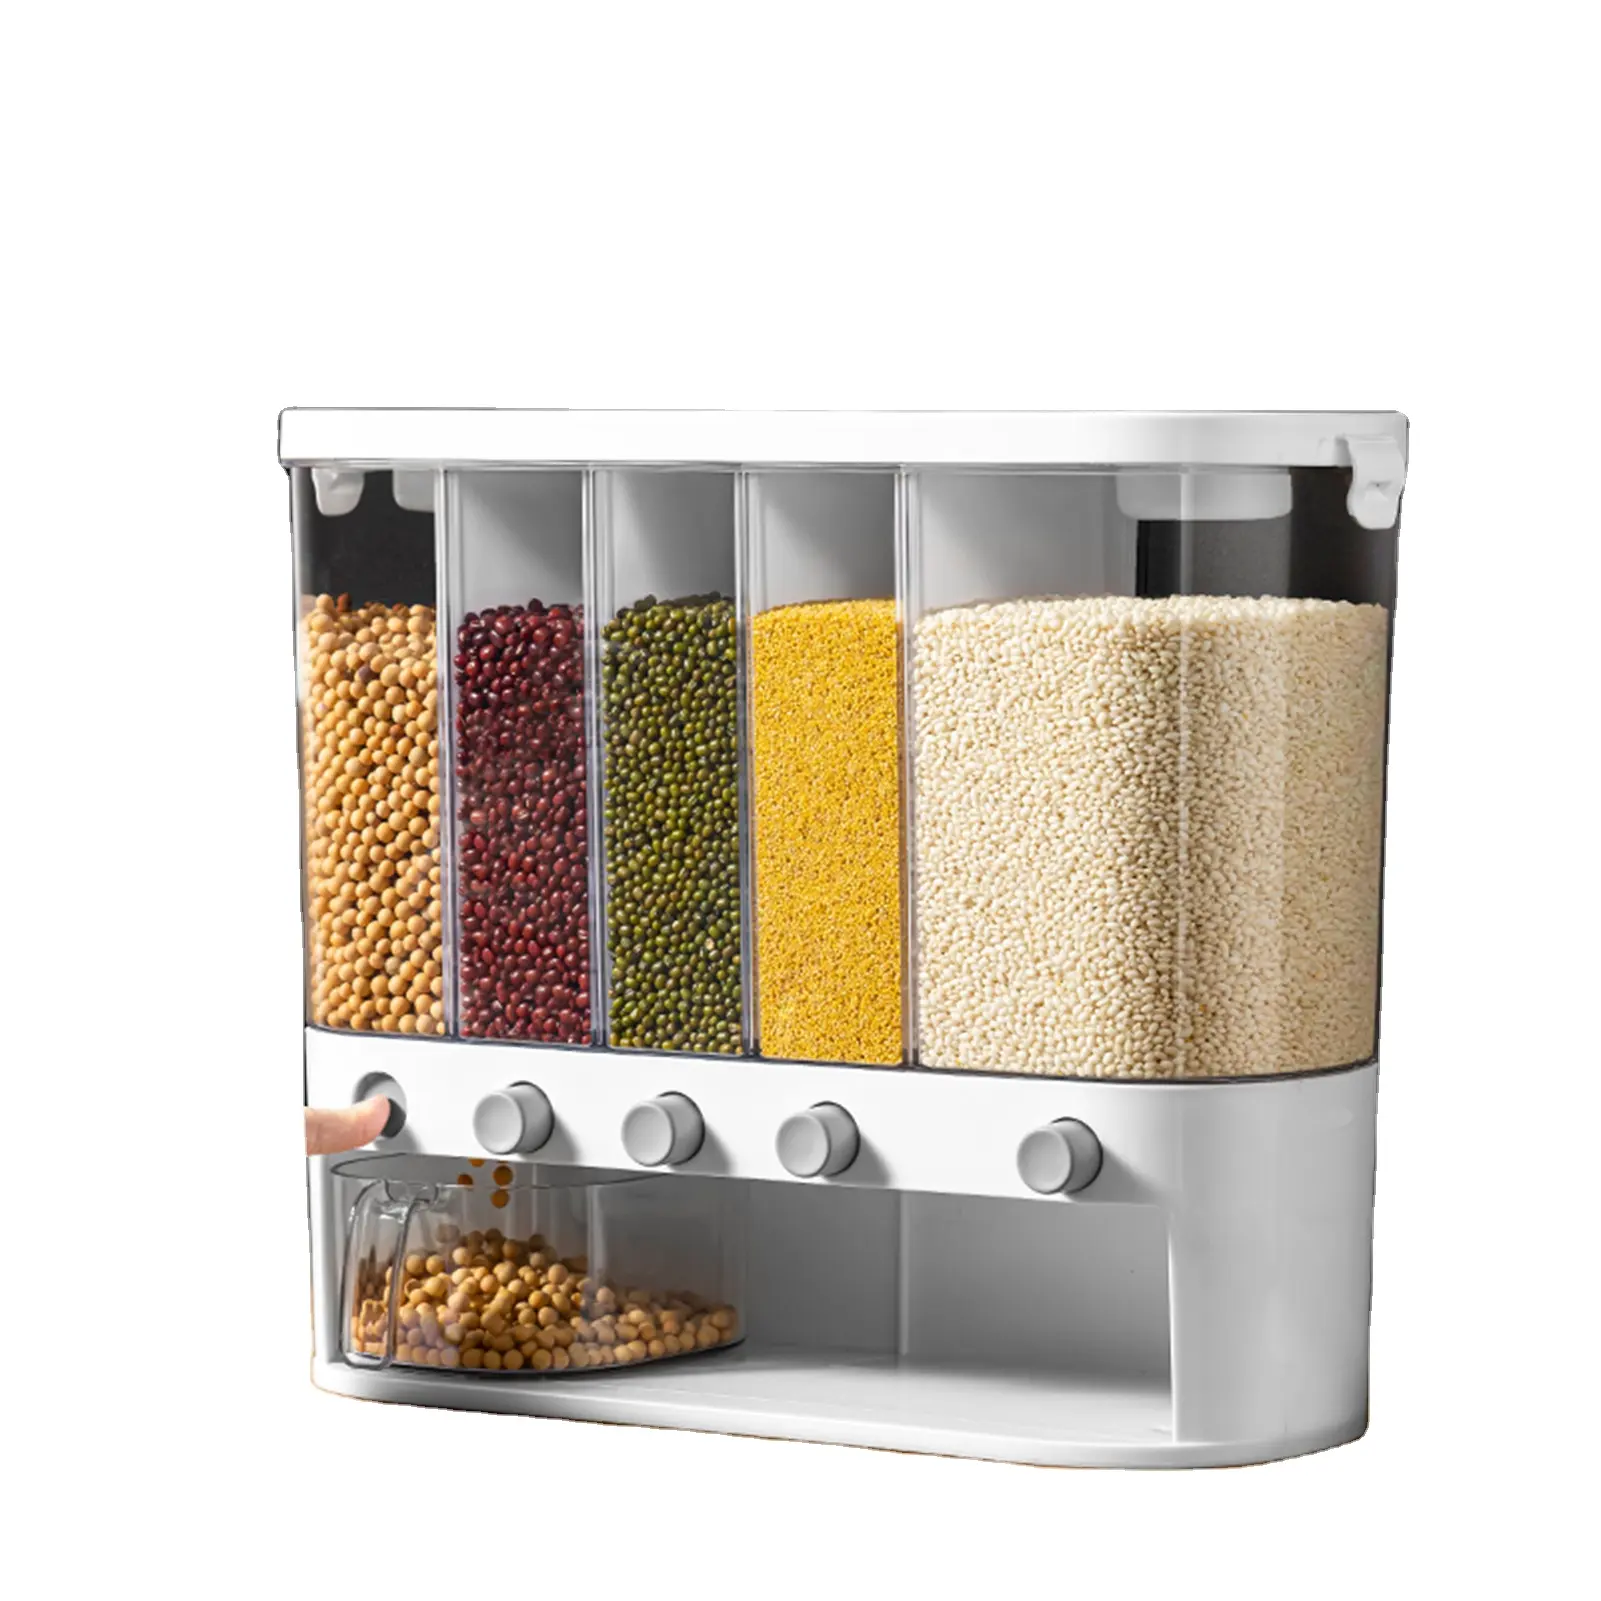 5 thạc-gạo Dispenser treo tường thực phẩm khô Dispenser cửa hàng nhà bếp trong hộp kín nhựa đa chức năng hình chữ nhật